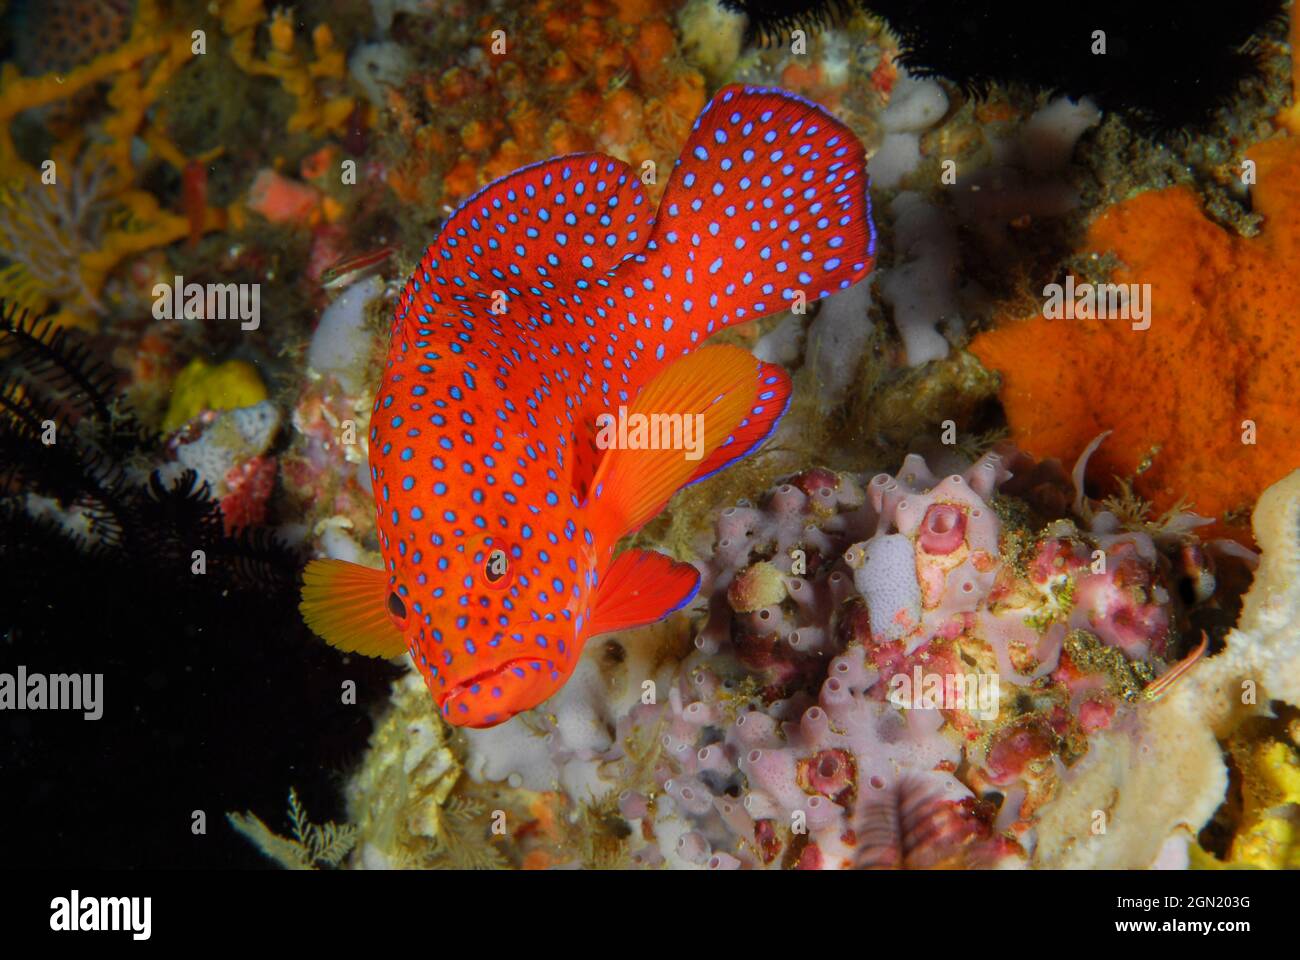 Corallo hind (Cephalopholis miniata), un pesce tropicale impressionante che si trova generalmente su ben sviluppate barriere coralline in acque limpide. Nutre di più su piccoli pesci Foto Stock